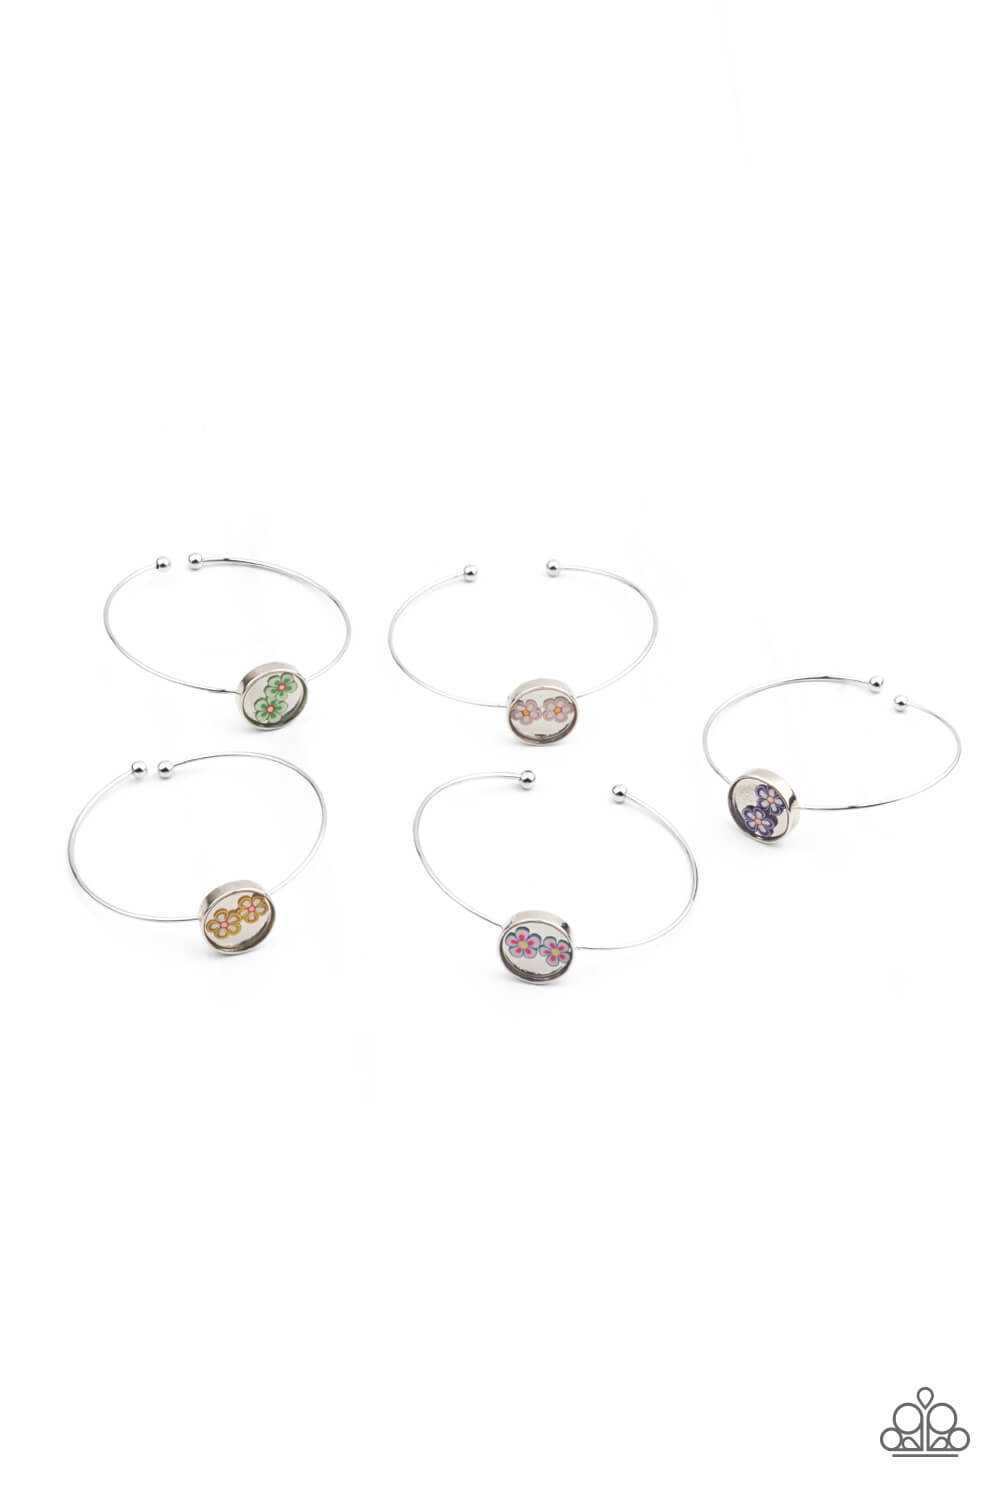 Glass Flower Children's Starlet Shimmer 5 Bracelet Bundle Set - Princess Glam Shop